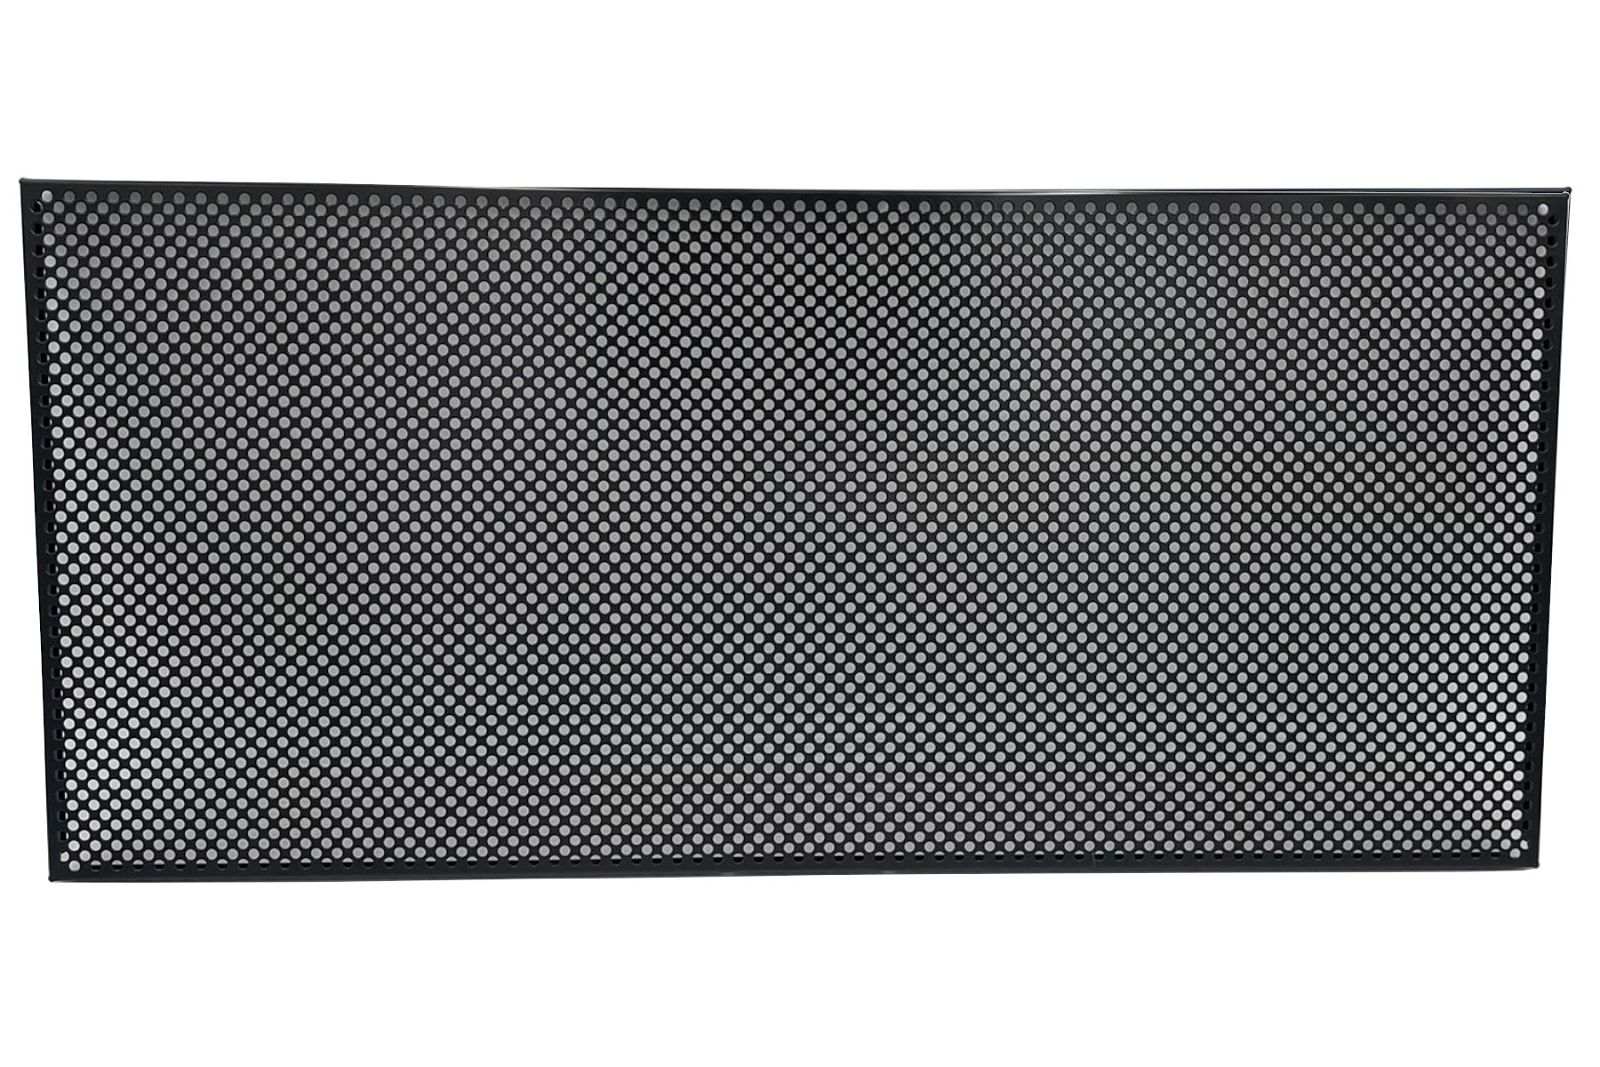 USM Haller Tablar 350x350, perforiert Schwarz - Gebraucht - Größe wählbar